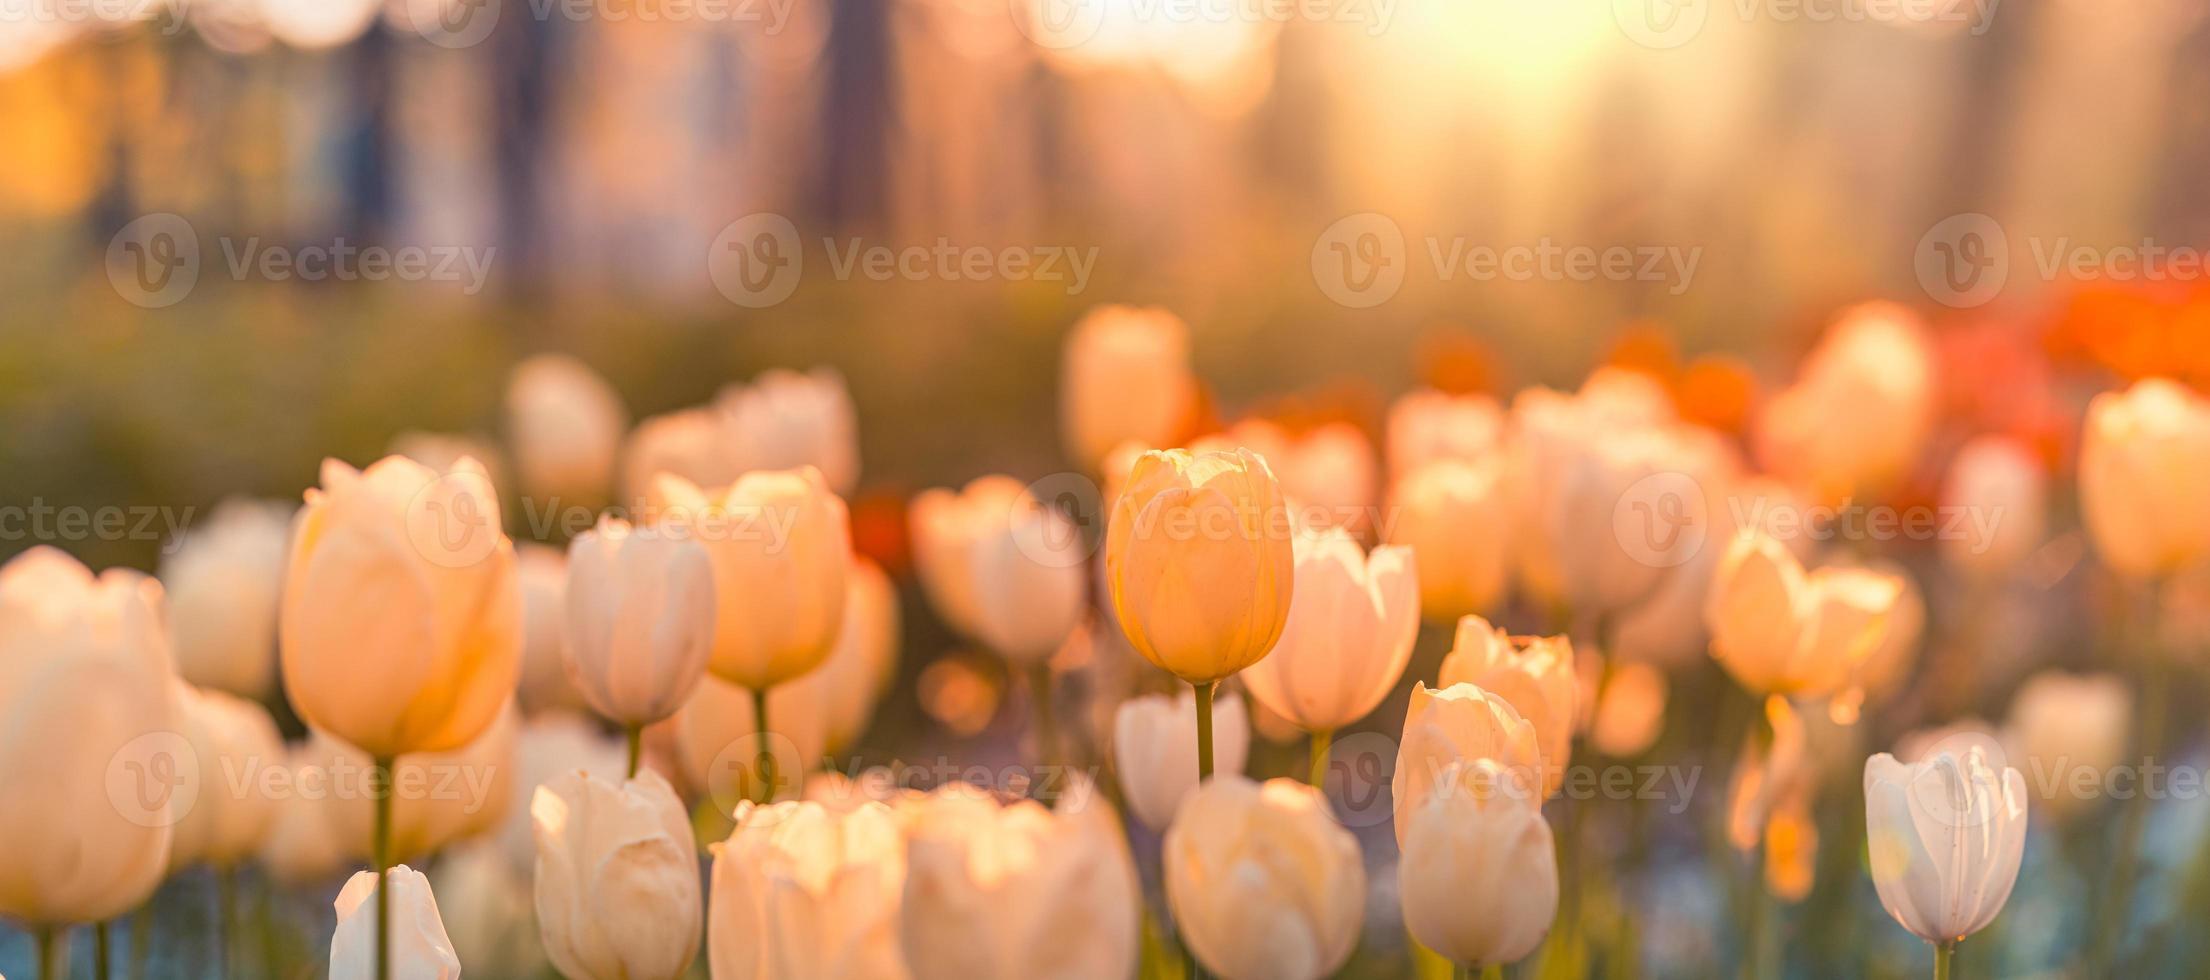 schöne bunte tulpen auf unscharfer frühlingssonniger naturlandschaft. hell blühende tulpenblumenpanorama für frühlingsnaturliebeskonzept. erstaunliche natürliche frühlingsszene, design, ruhiges blumenbanner foto